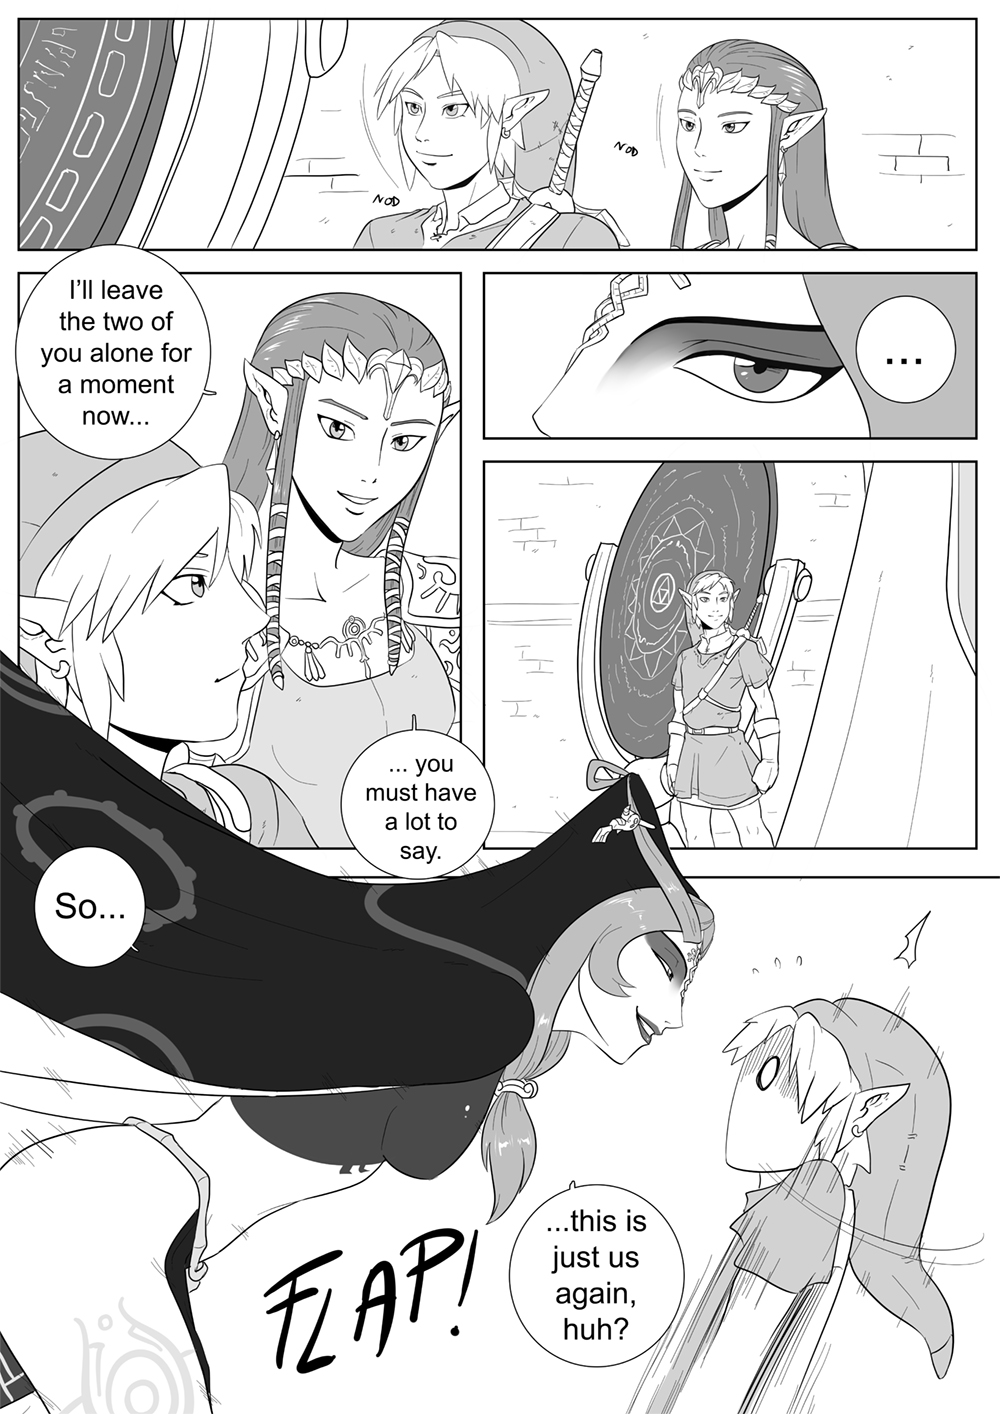 [oo Sebastian Oo] A Link Between Girl 002 Queen Midna The Legend Of Zelda Hentai Online Porn